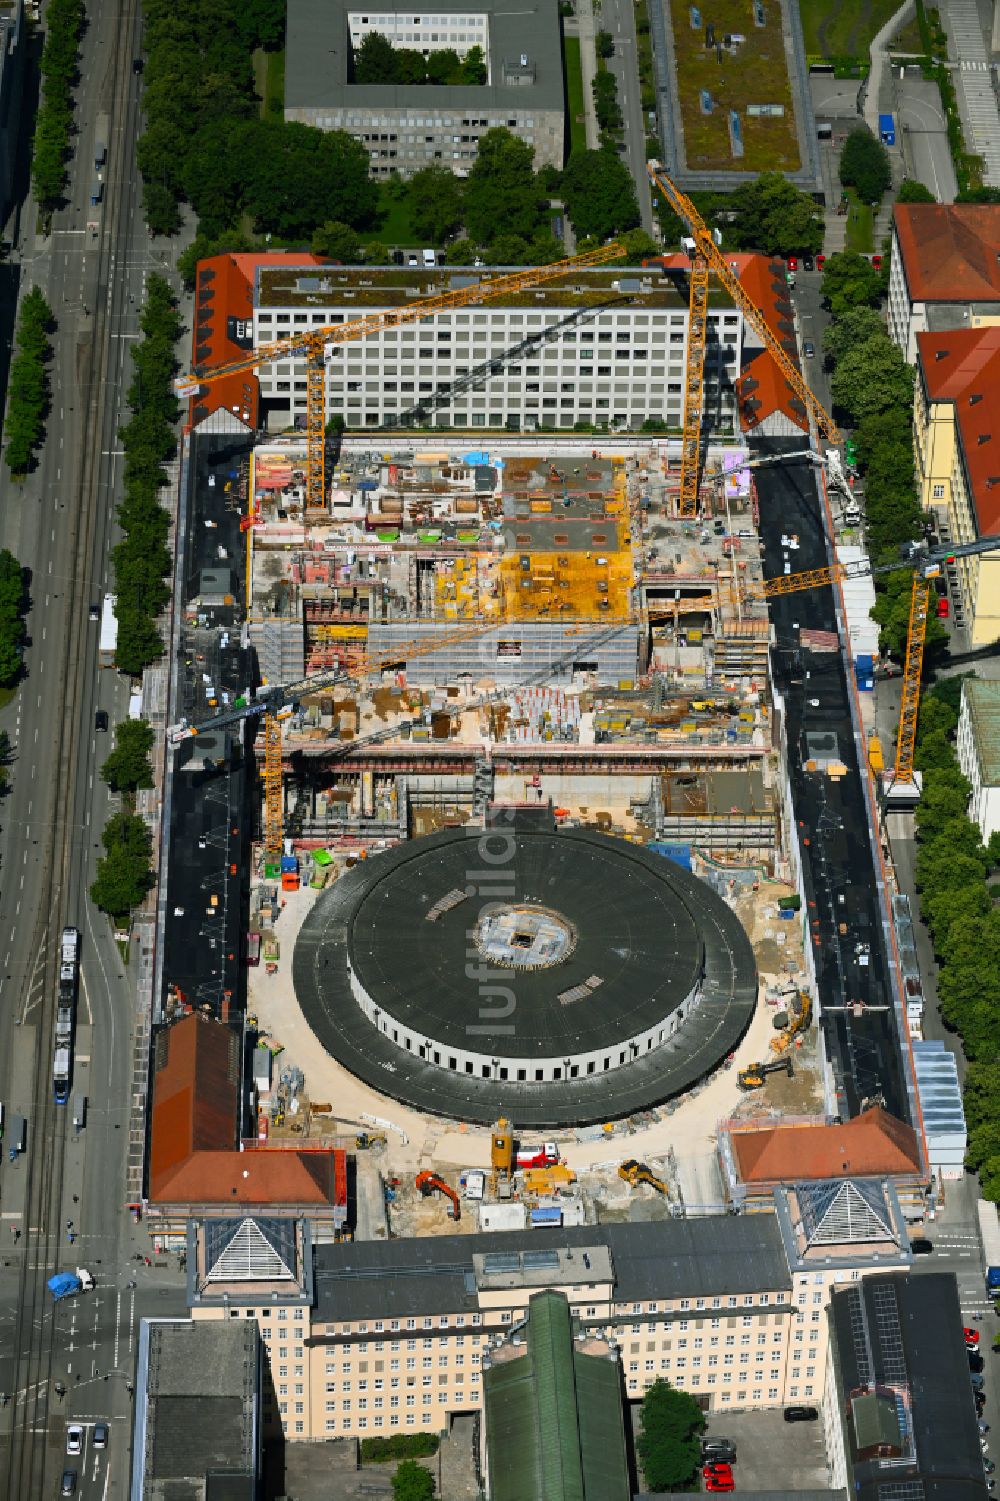 München aus der Vogelperspektive: Baustelle zum Umbau des Postpalast zu einem Hotel im Ortsteil Maxvorstadt in München im Bundesland Bayern, Deutschland